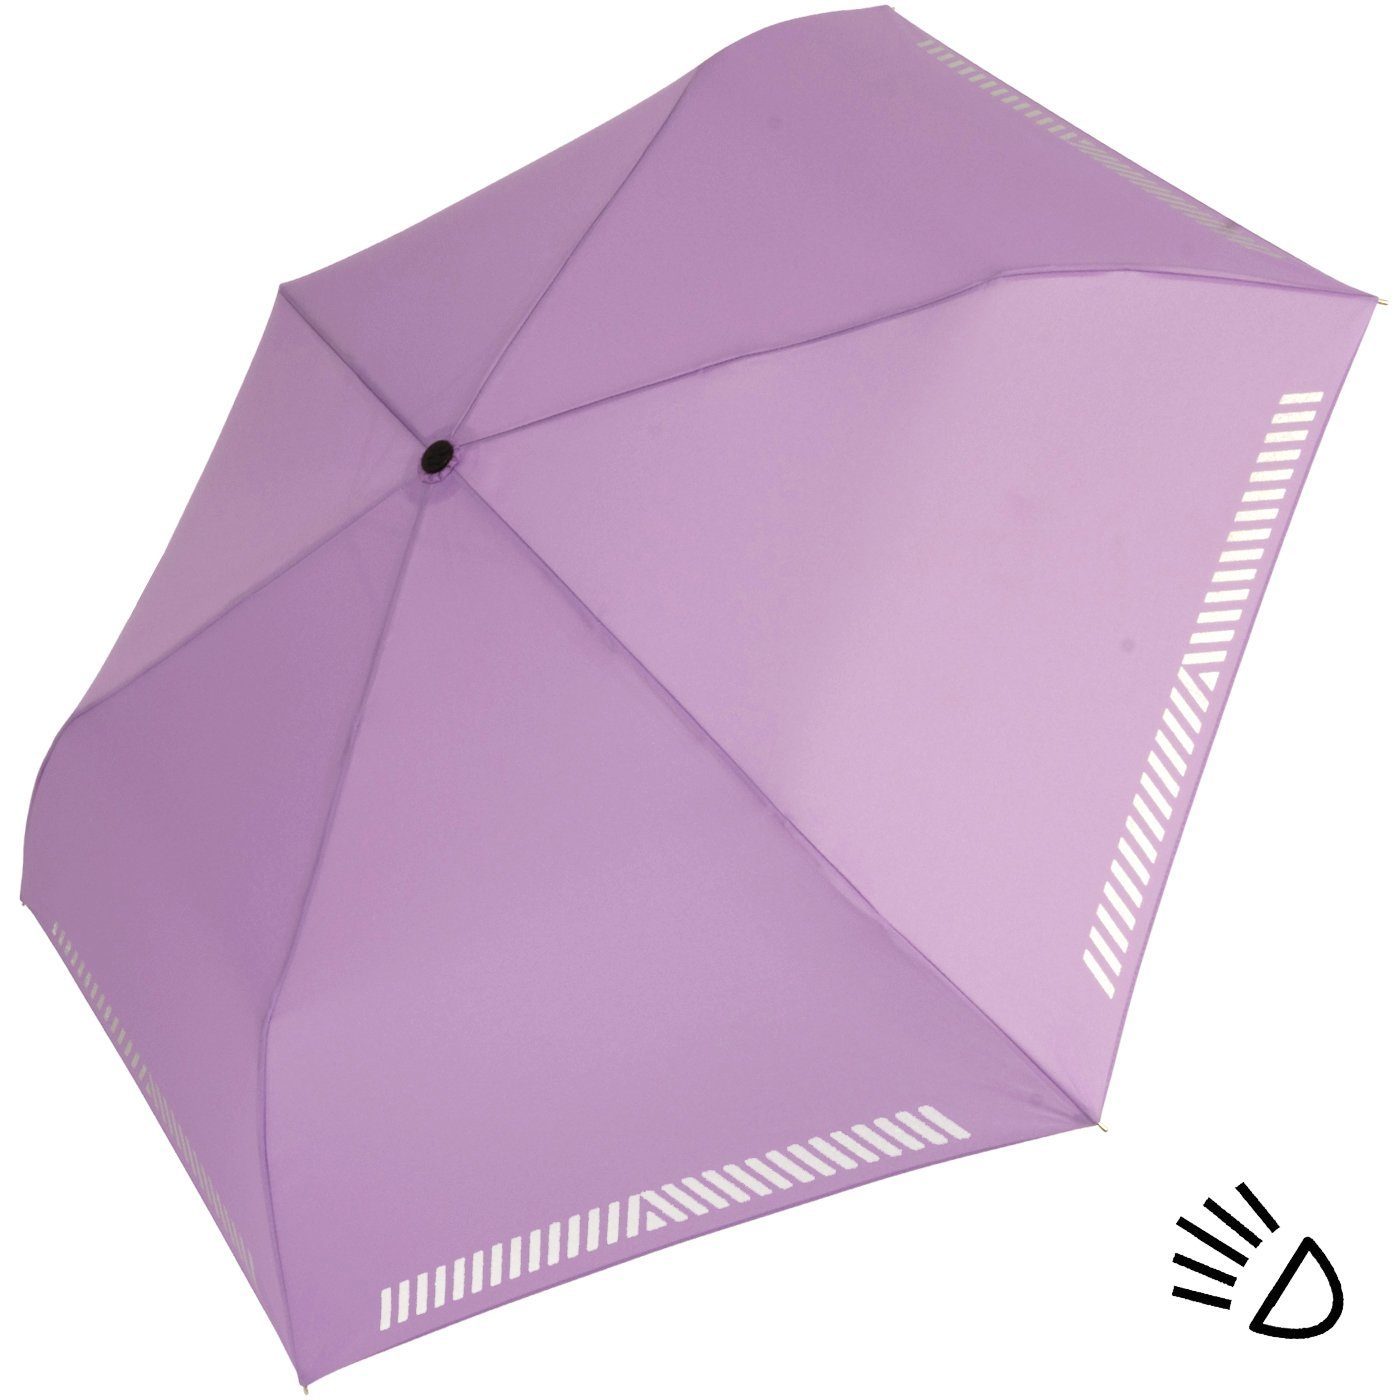 iX-brella Taschenregenschirm Mini Kinderschirm Safety leicht, extra reflektierend Reflex berry-light